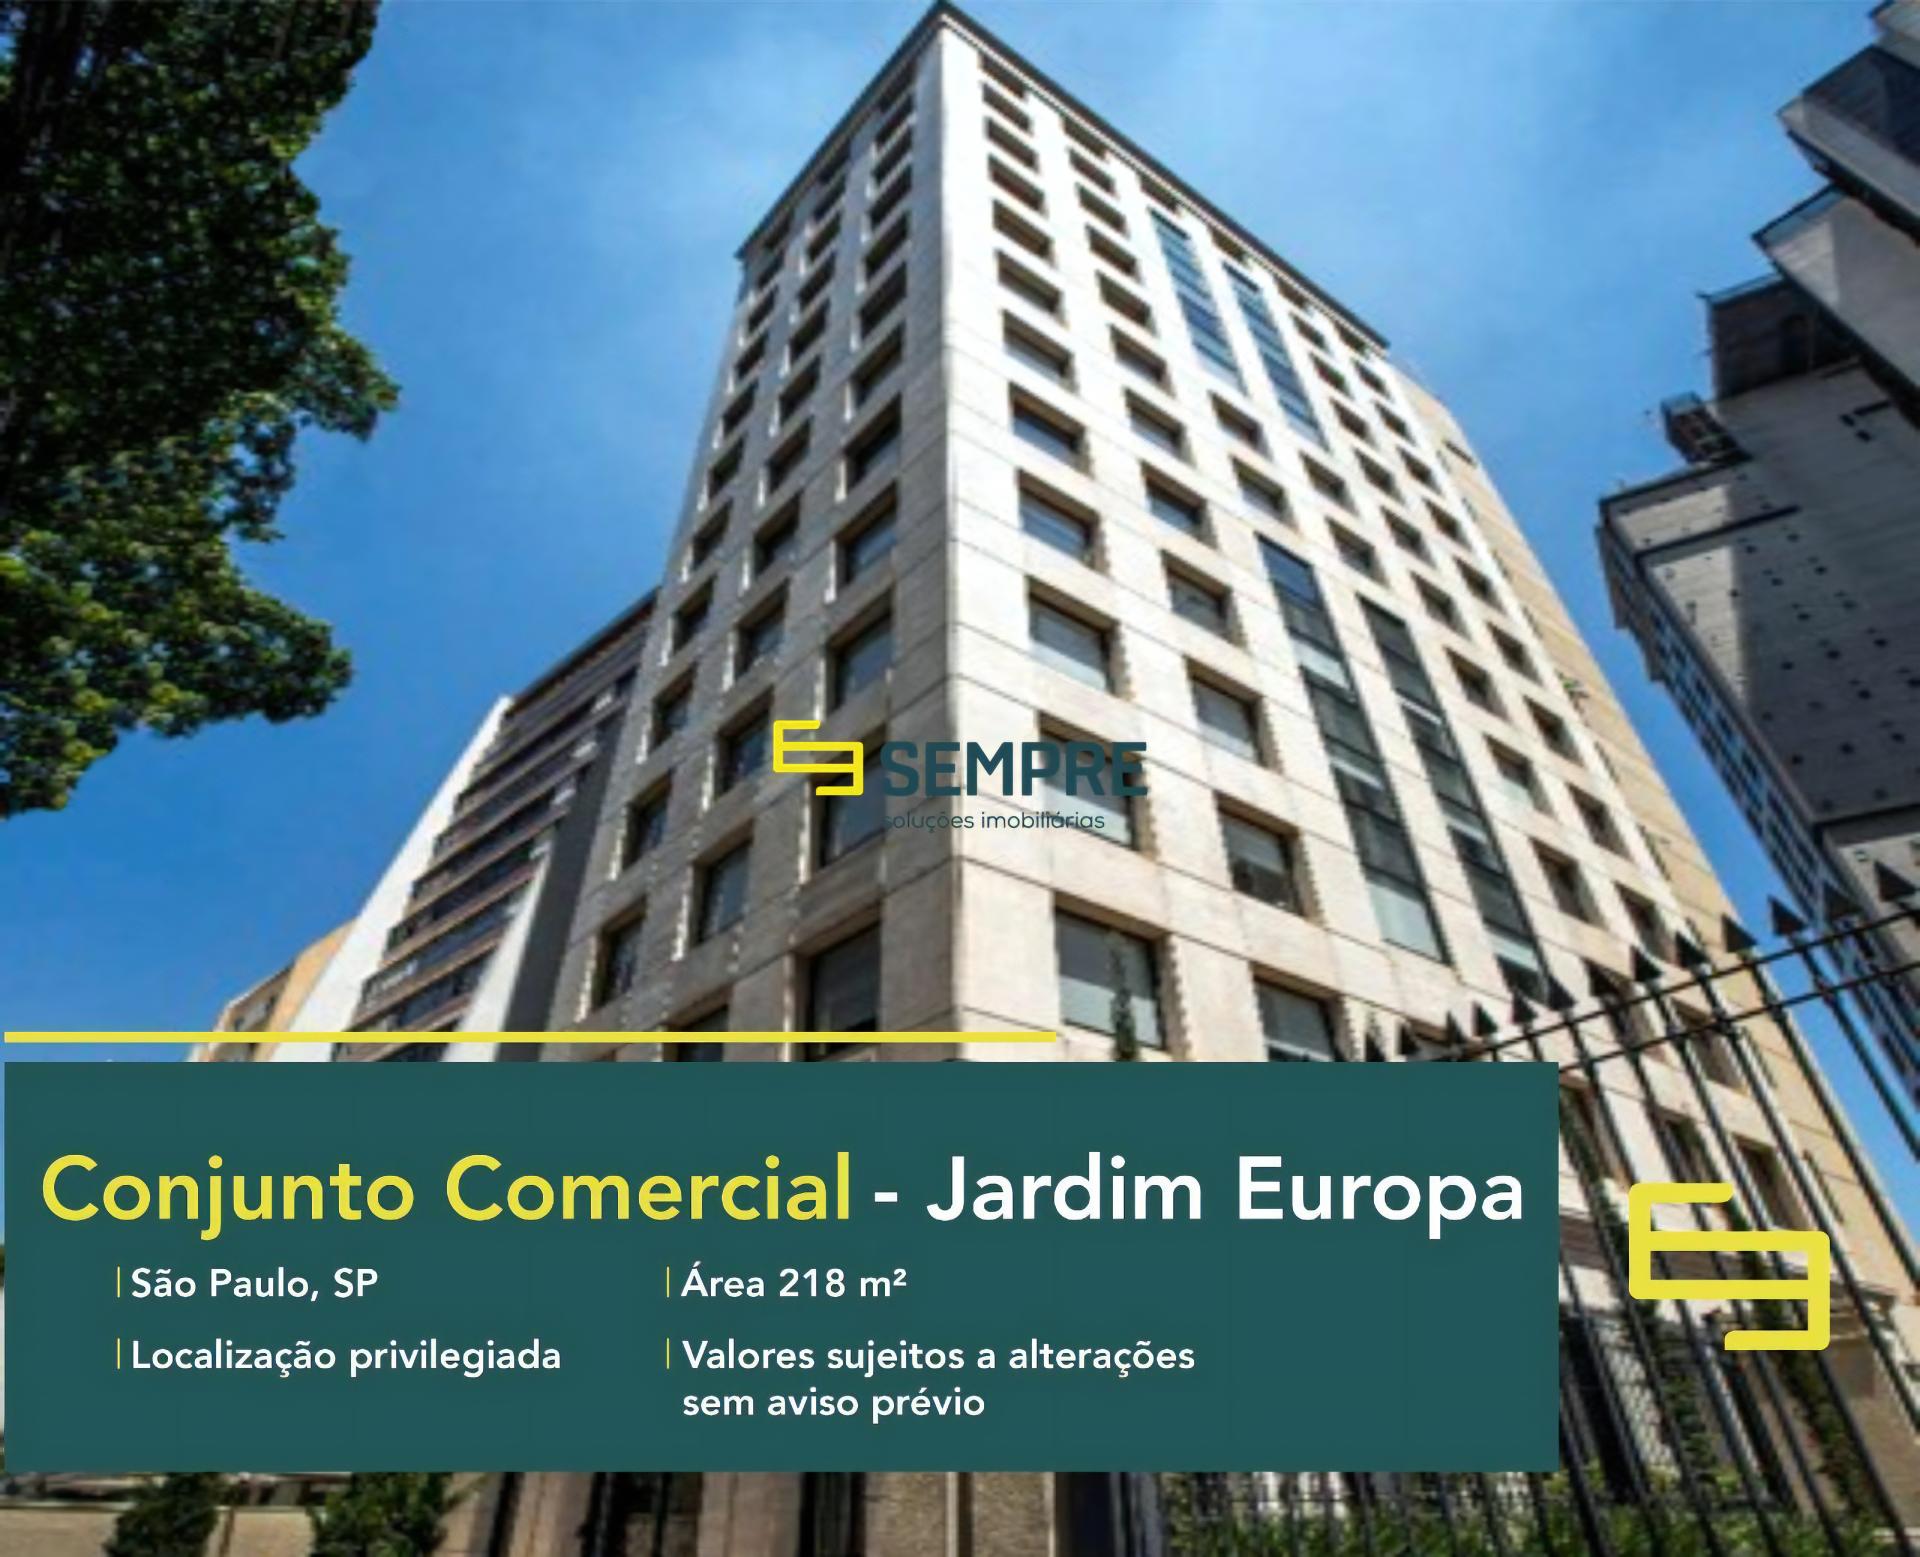 Laje corporativa no Jardim Europa para locação em São Paulo, excelente localização. O estabelecimento comercial conta com área de 218 m².